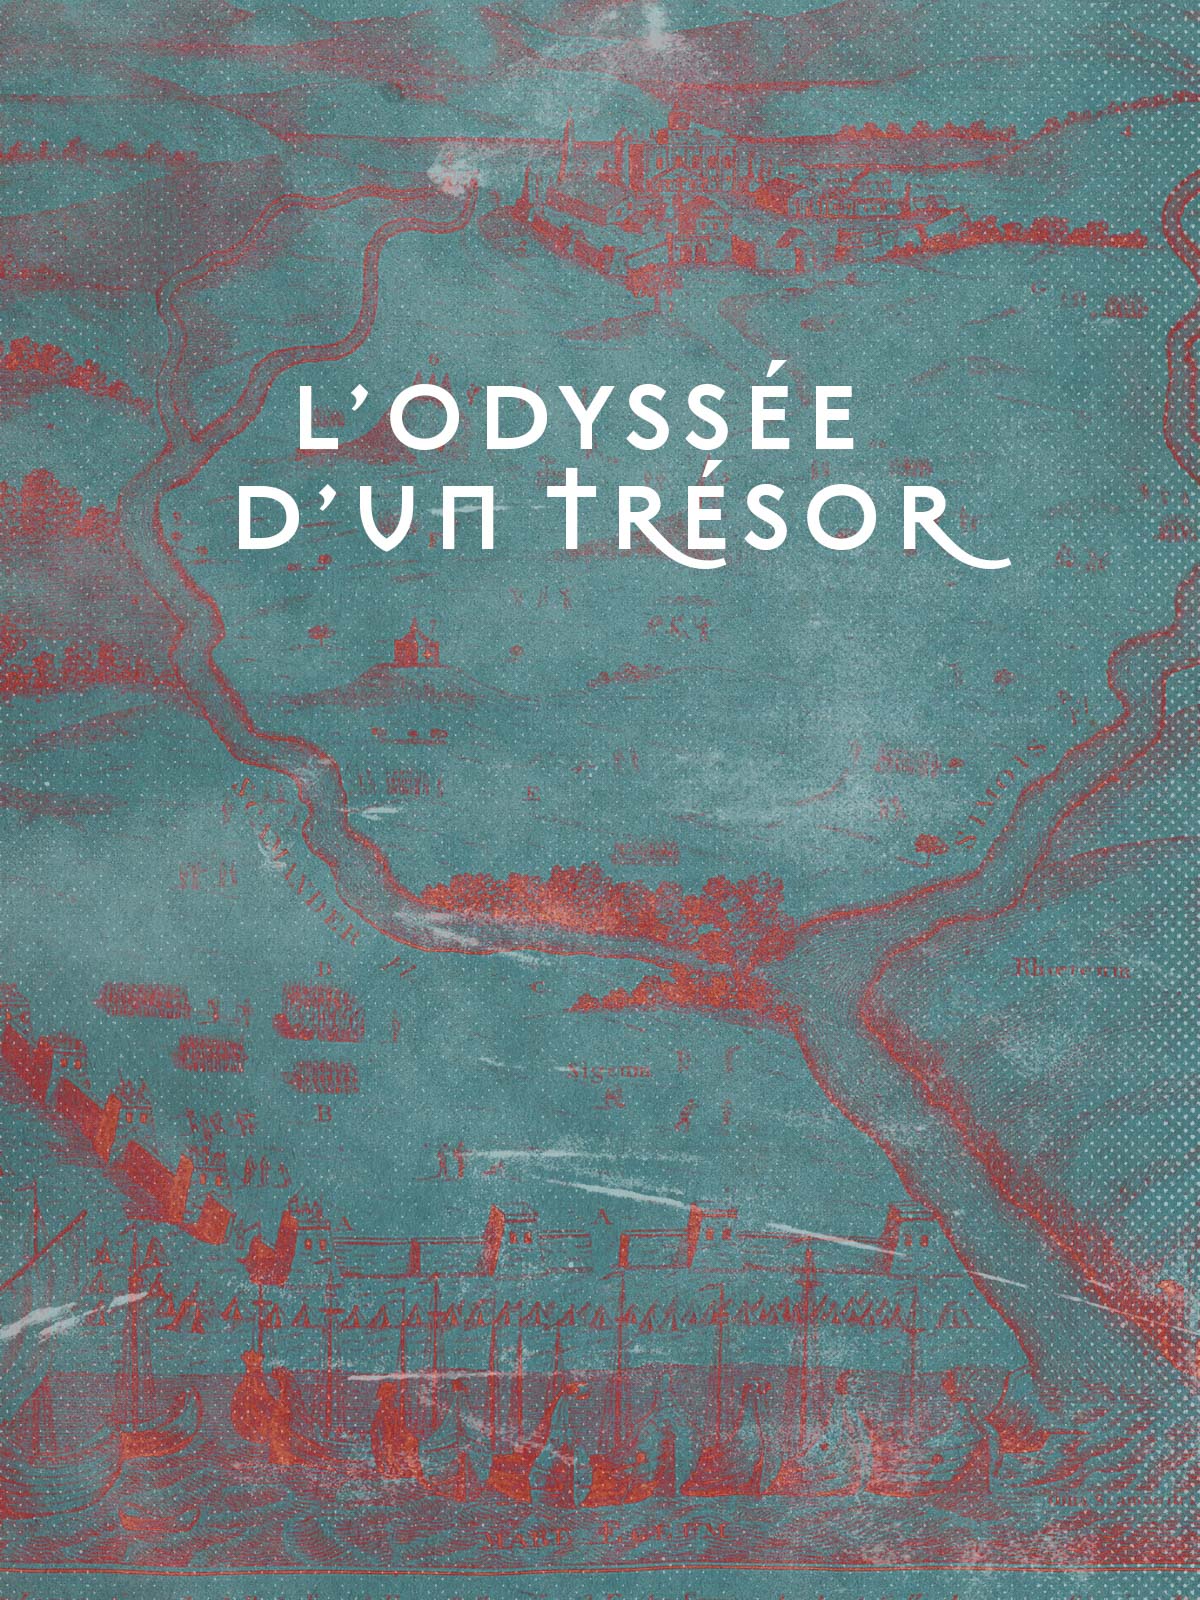 Одиссея сокровищ: золото Приама (2020) постер